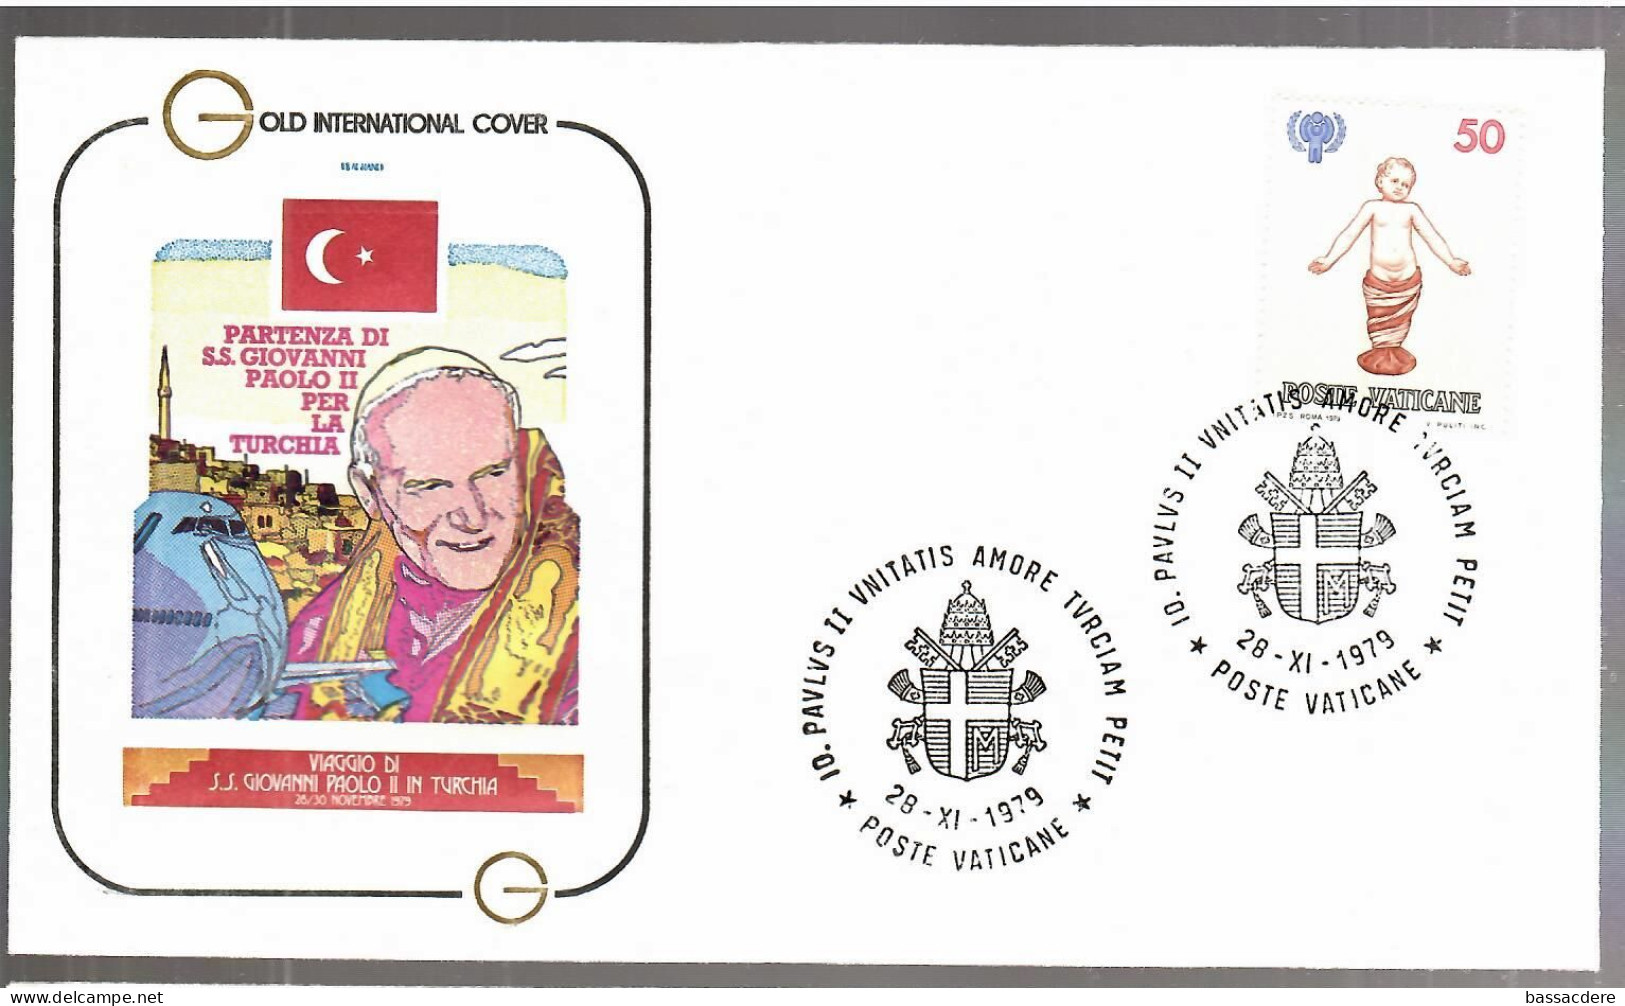 80179   21  enveloppes des voyages  du  Pape  JEAN  PAUL II